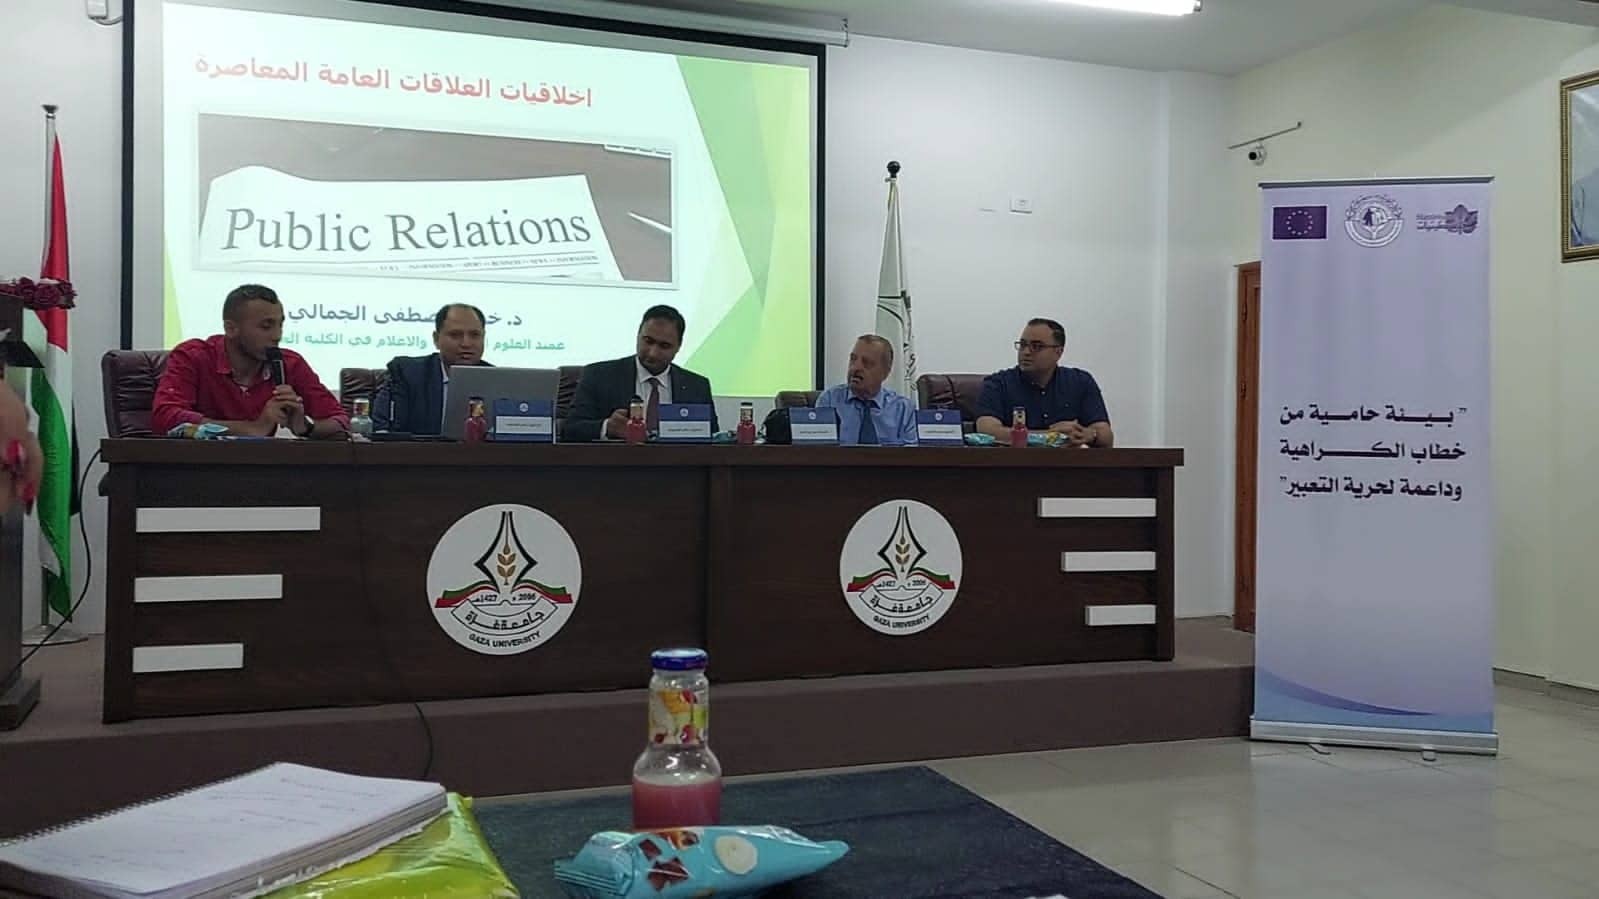 بالصور: جامعة غزة تنظّم ندوة حول أخلاقيات الكتابة للعلاقات العامة